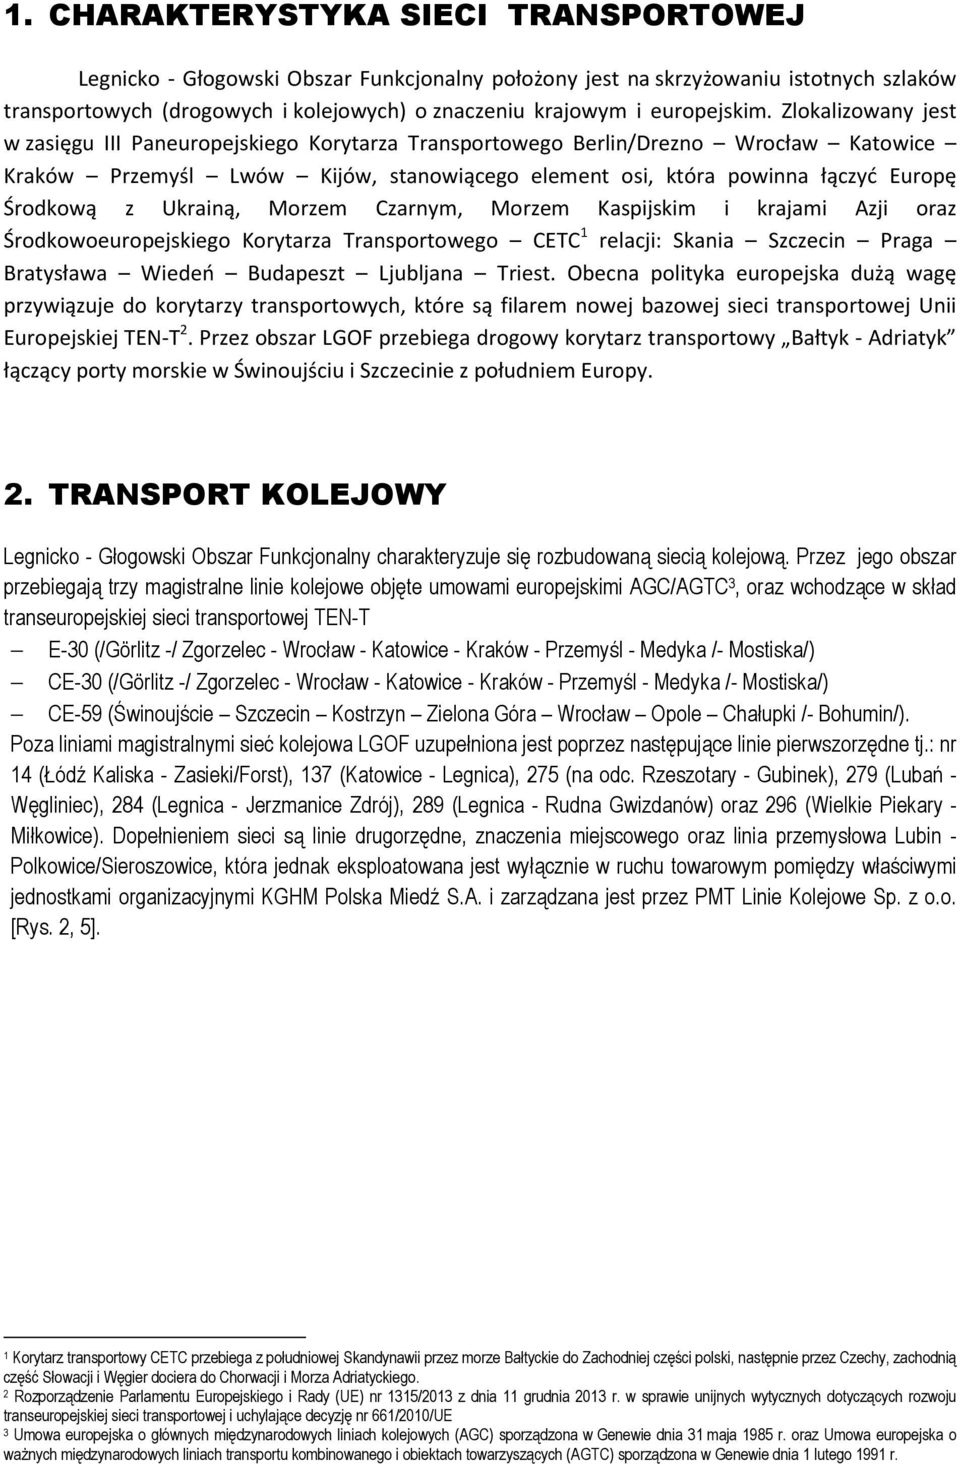 Zlokalizowany jest w zasięgu III Paneuropejskiego Korytarza Transportowego Berlin/Drezno Wrocław Katowice Kraków Przemyśl Lwów Kijów, stanowiącego element osi, która powinna łączyć Europę Środkową z